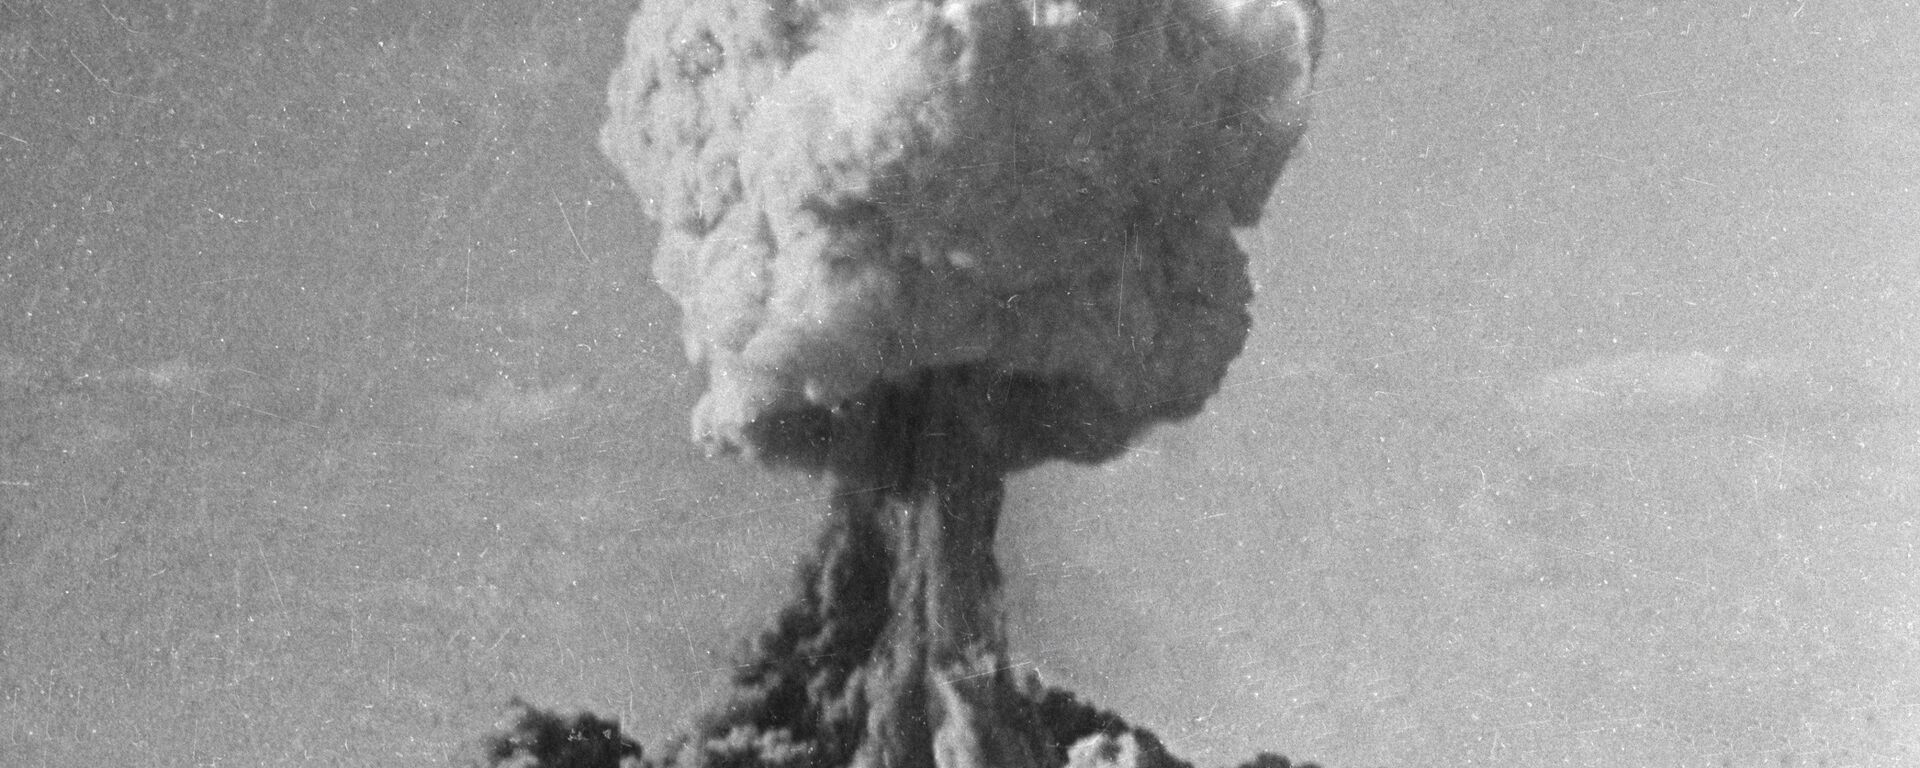 Explosion d'une bombe nucléaire (image d'illustration) - Sputnik Afrique, 1920, 20.02.2020